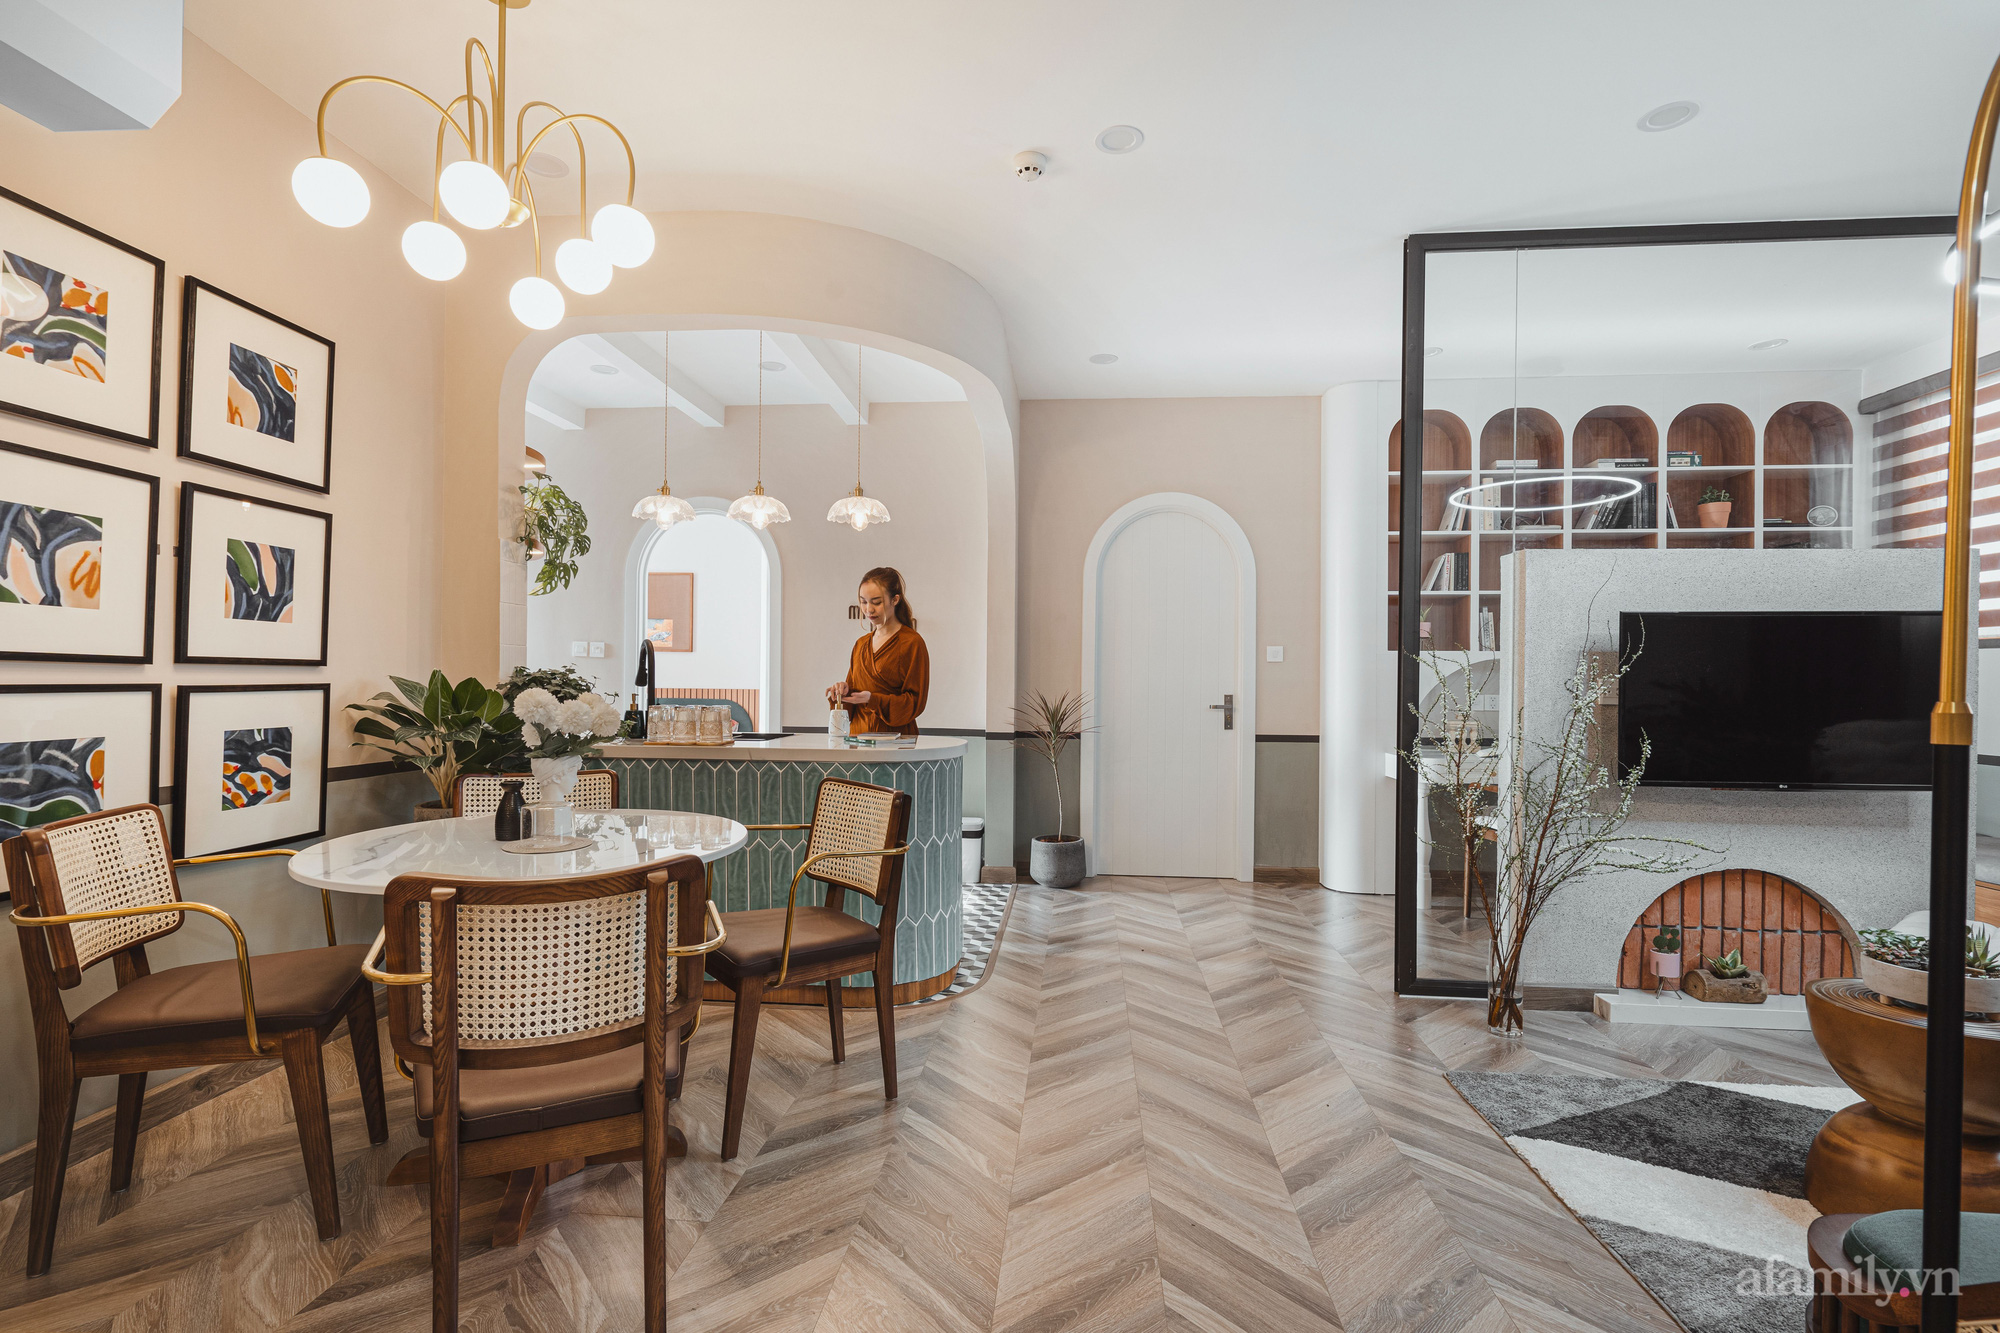 Chiêm ngưỡng căn hộ 83m² kết hợp 3 phong cách Farrmhouse, Ecletic và Scandinavian của cặp vợ chồng trẻ ở Hà Đông - Ảnh 9.